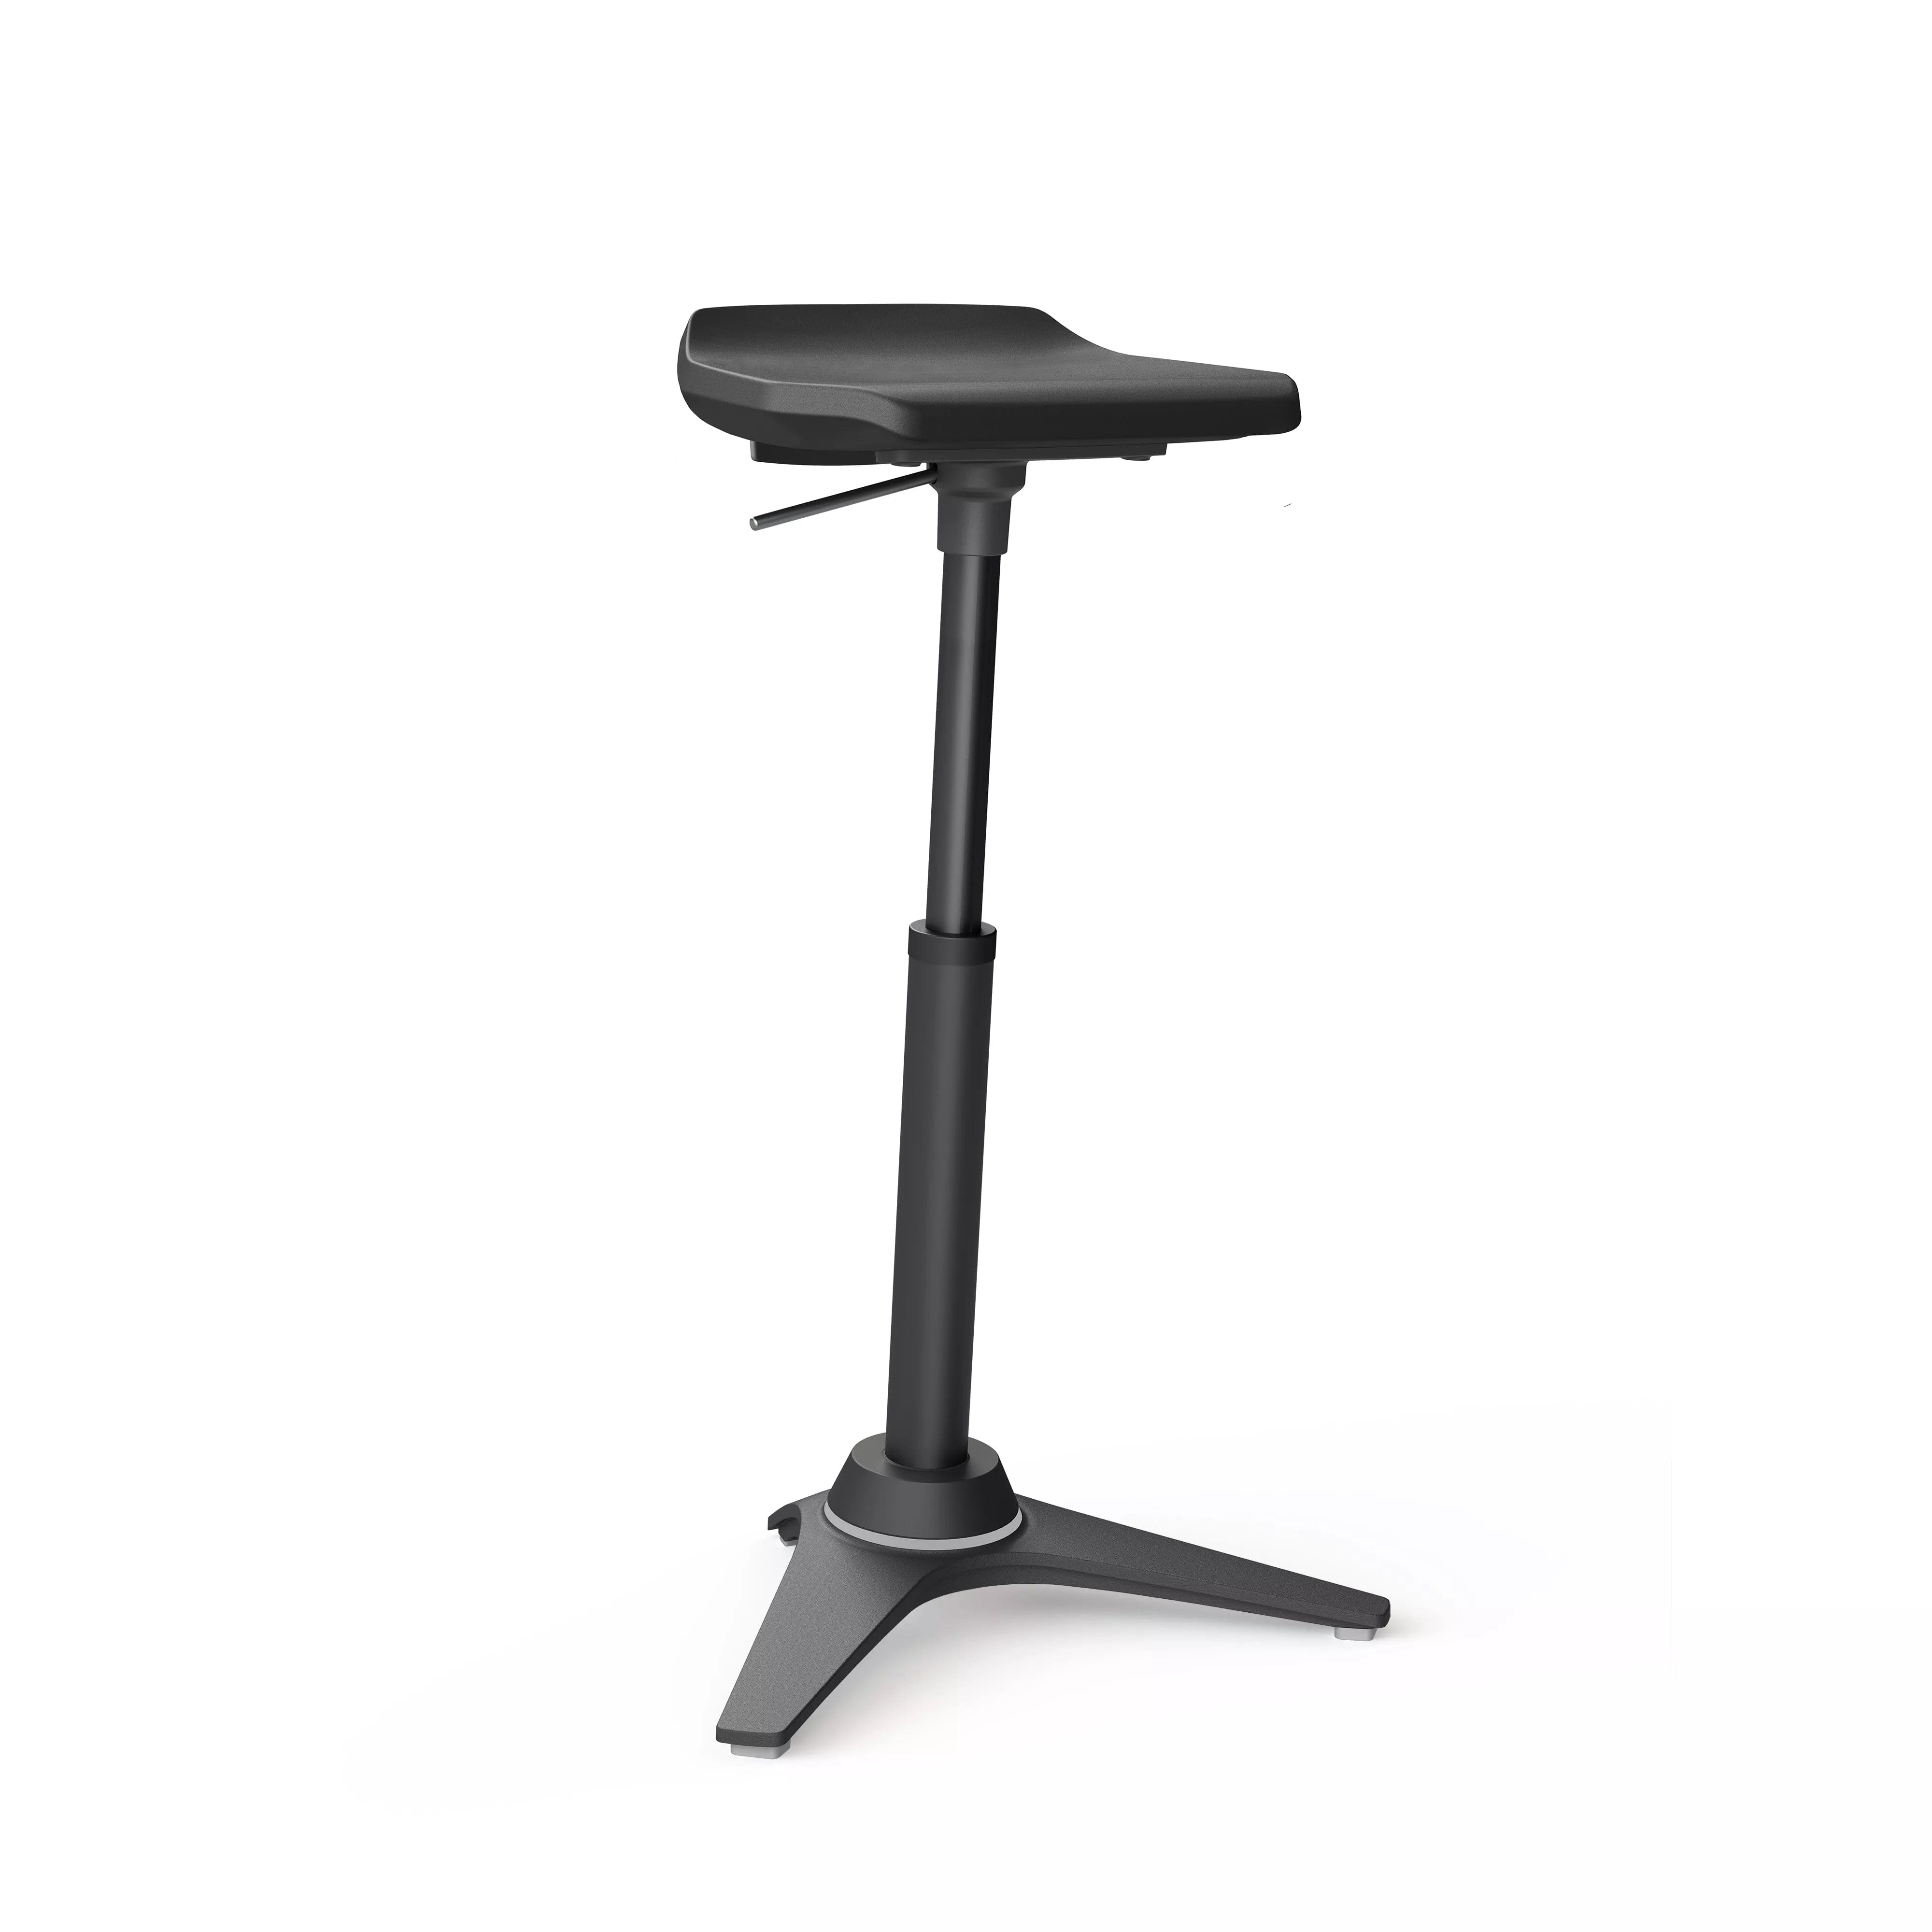  Muvman Industry - Aktiva stolar och sitsar, ben-fötter, hälsovård-industri, ryggbesvär, service, Stolar, trötthet - ErgoFinland